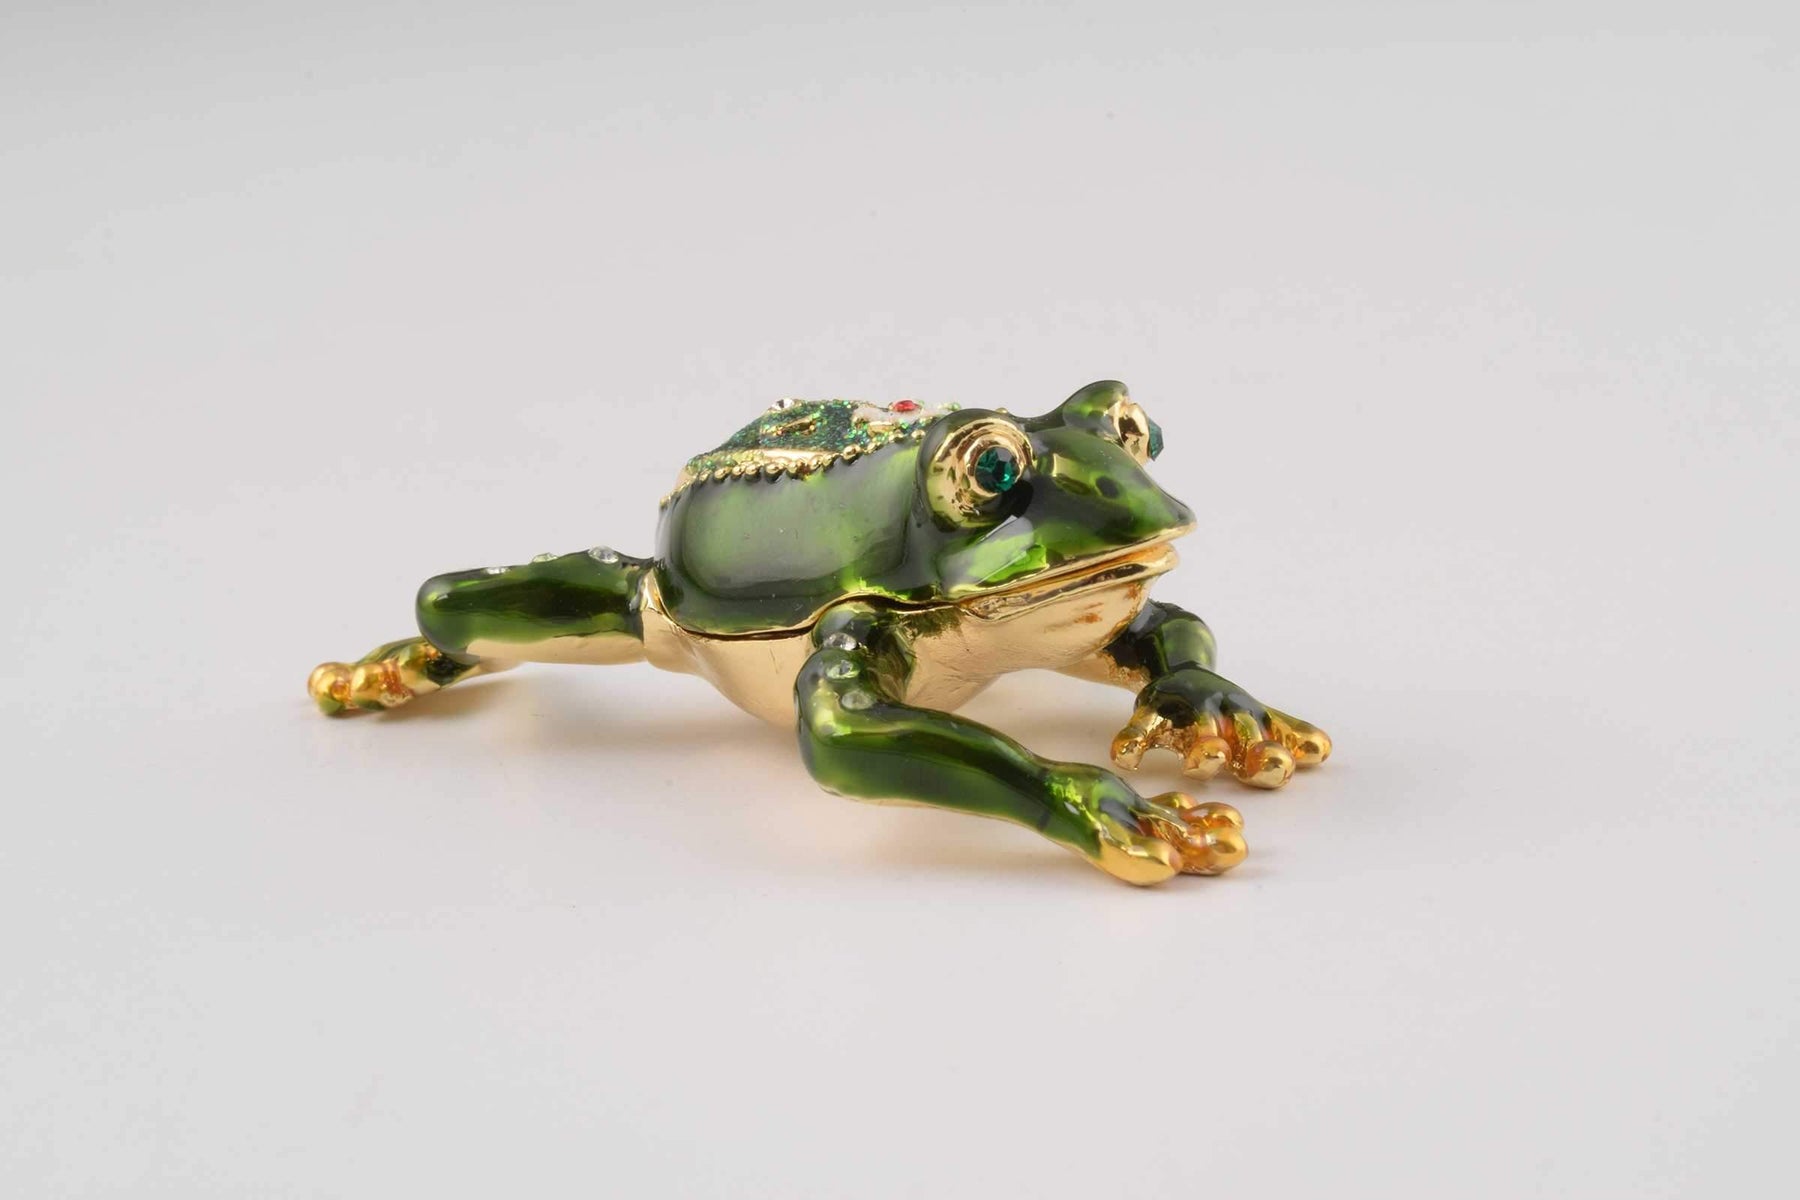 Keren Kopal Green Frog with a Flower  41.50